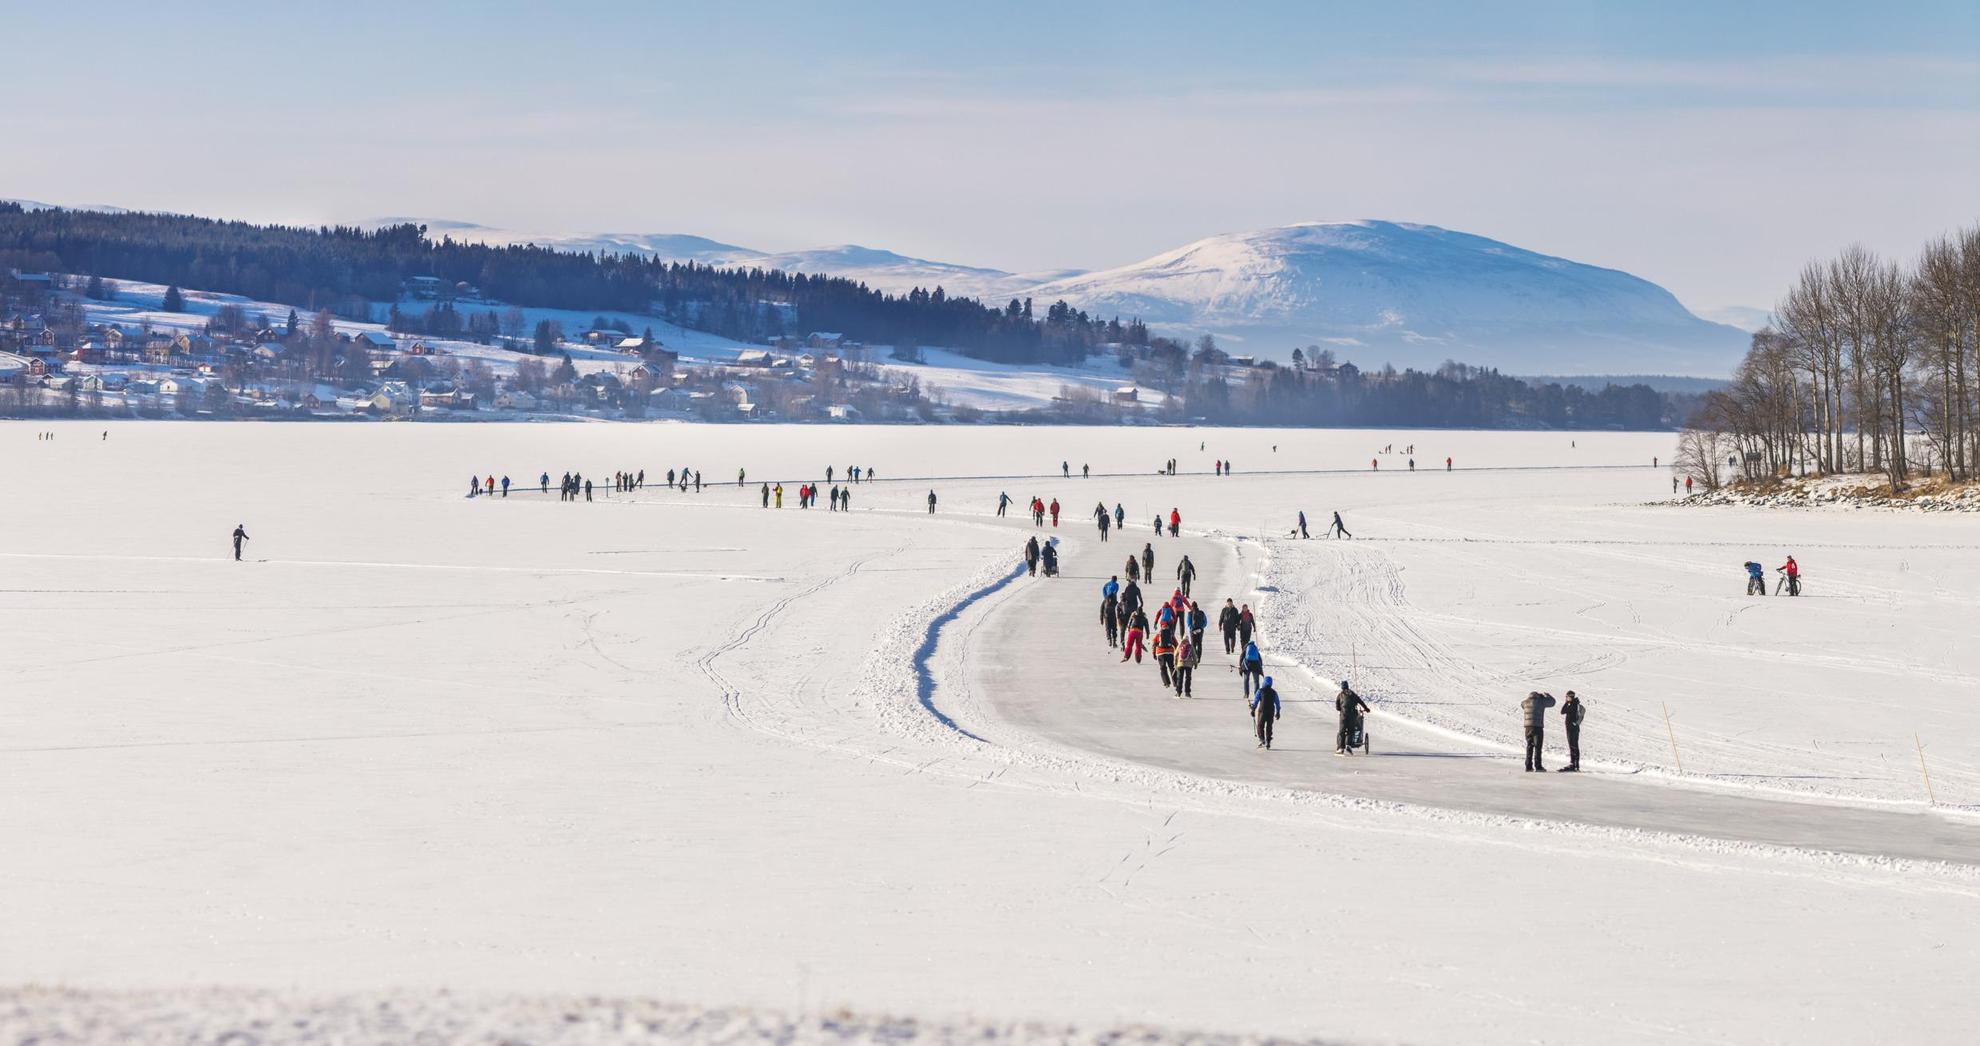 Auf einem schneebedeckten, zugefrorenen See laufen mehrere Personen auf präparierten Bahnen Schlittschuh. Häuser, Bäume und Berge im Hintergrund.